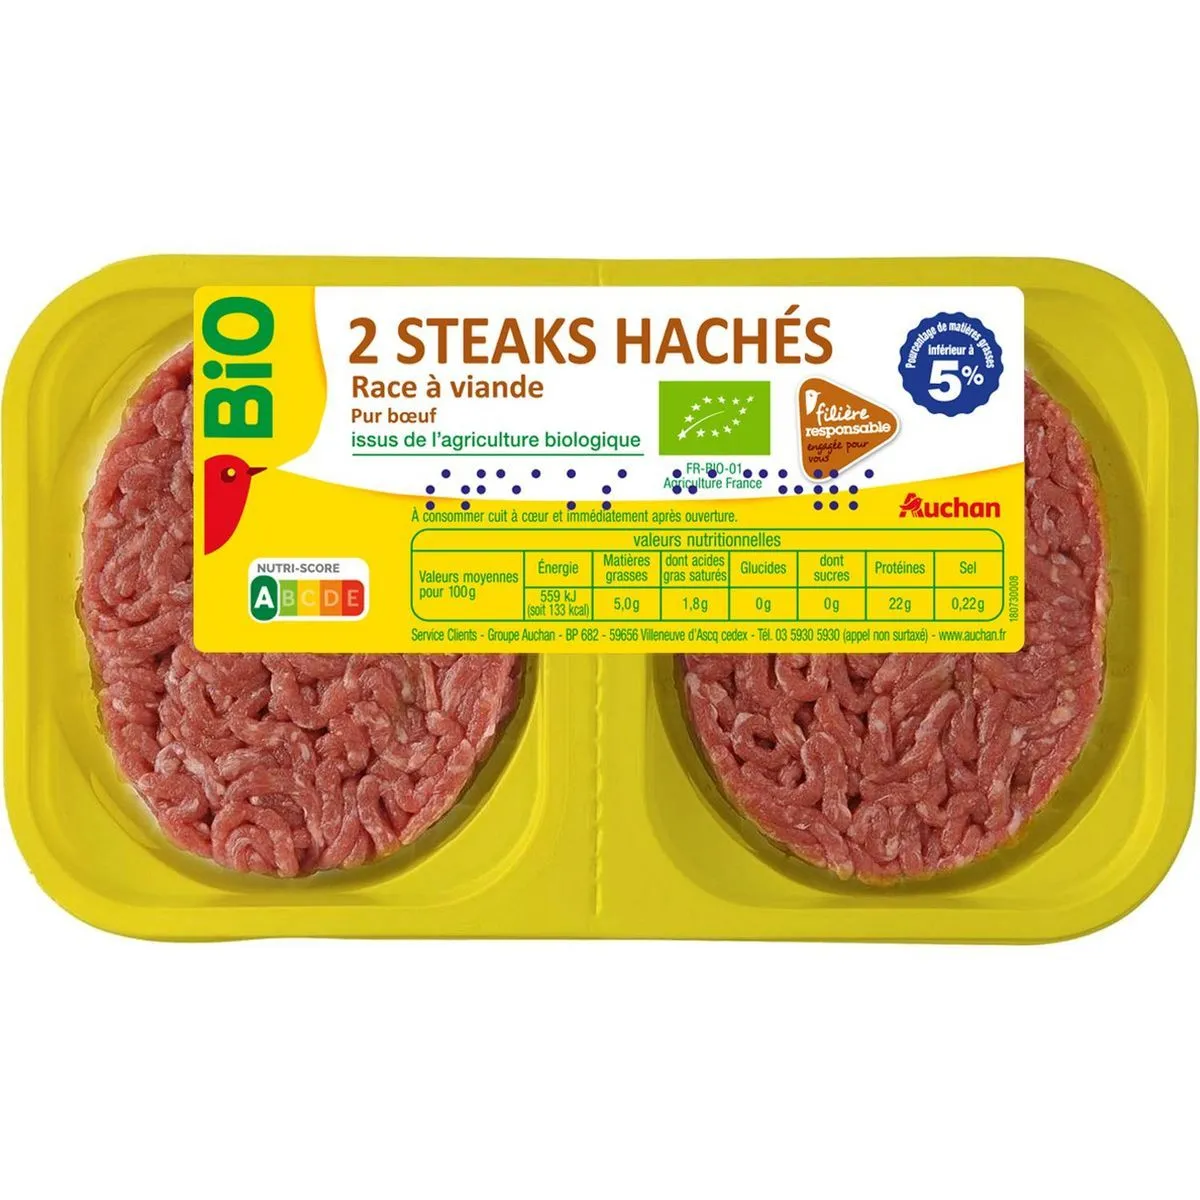 2 steaks hachés pur bœuf façon bouchère auchan bio